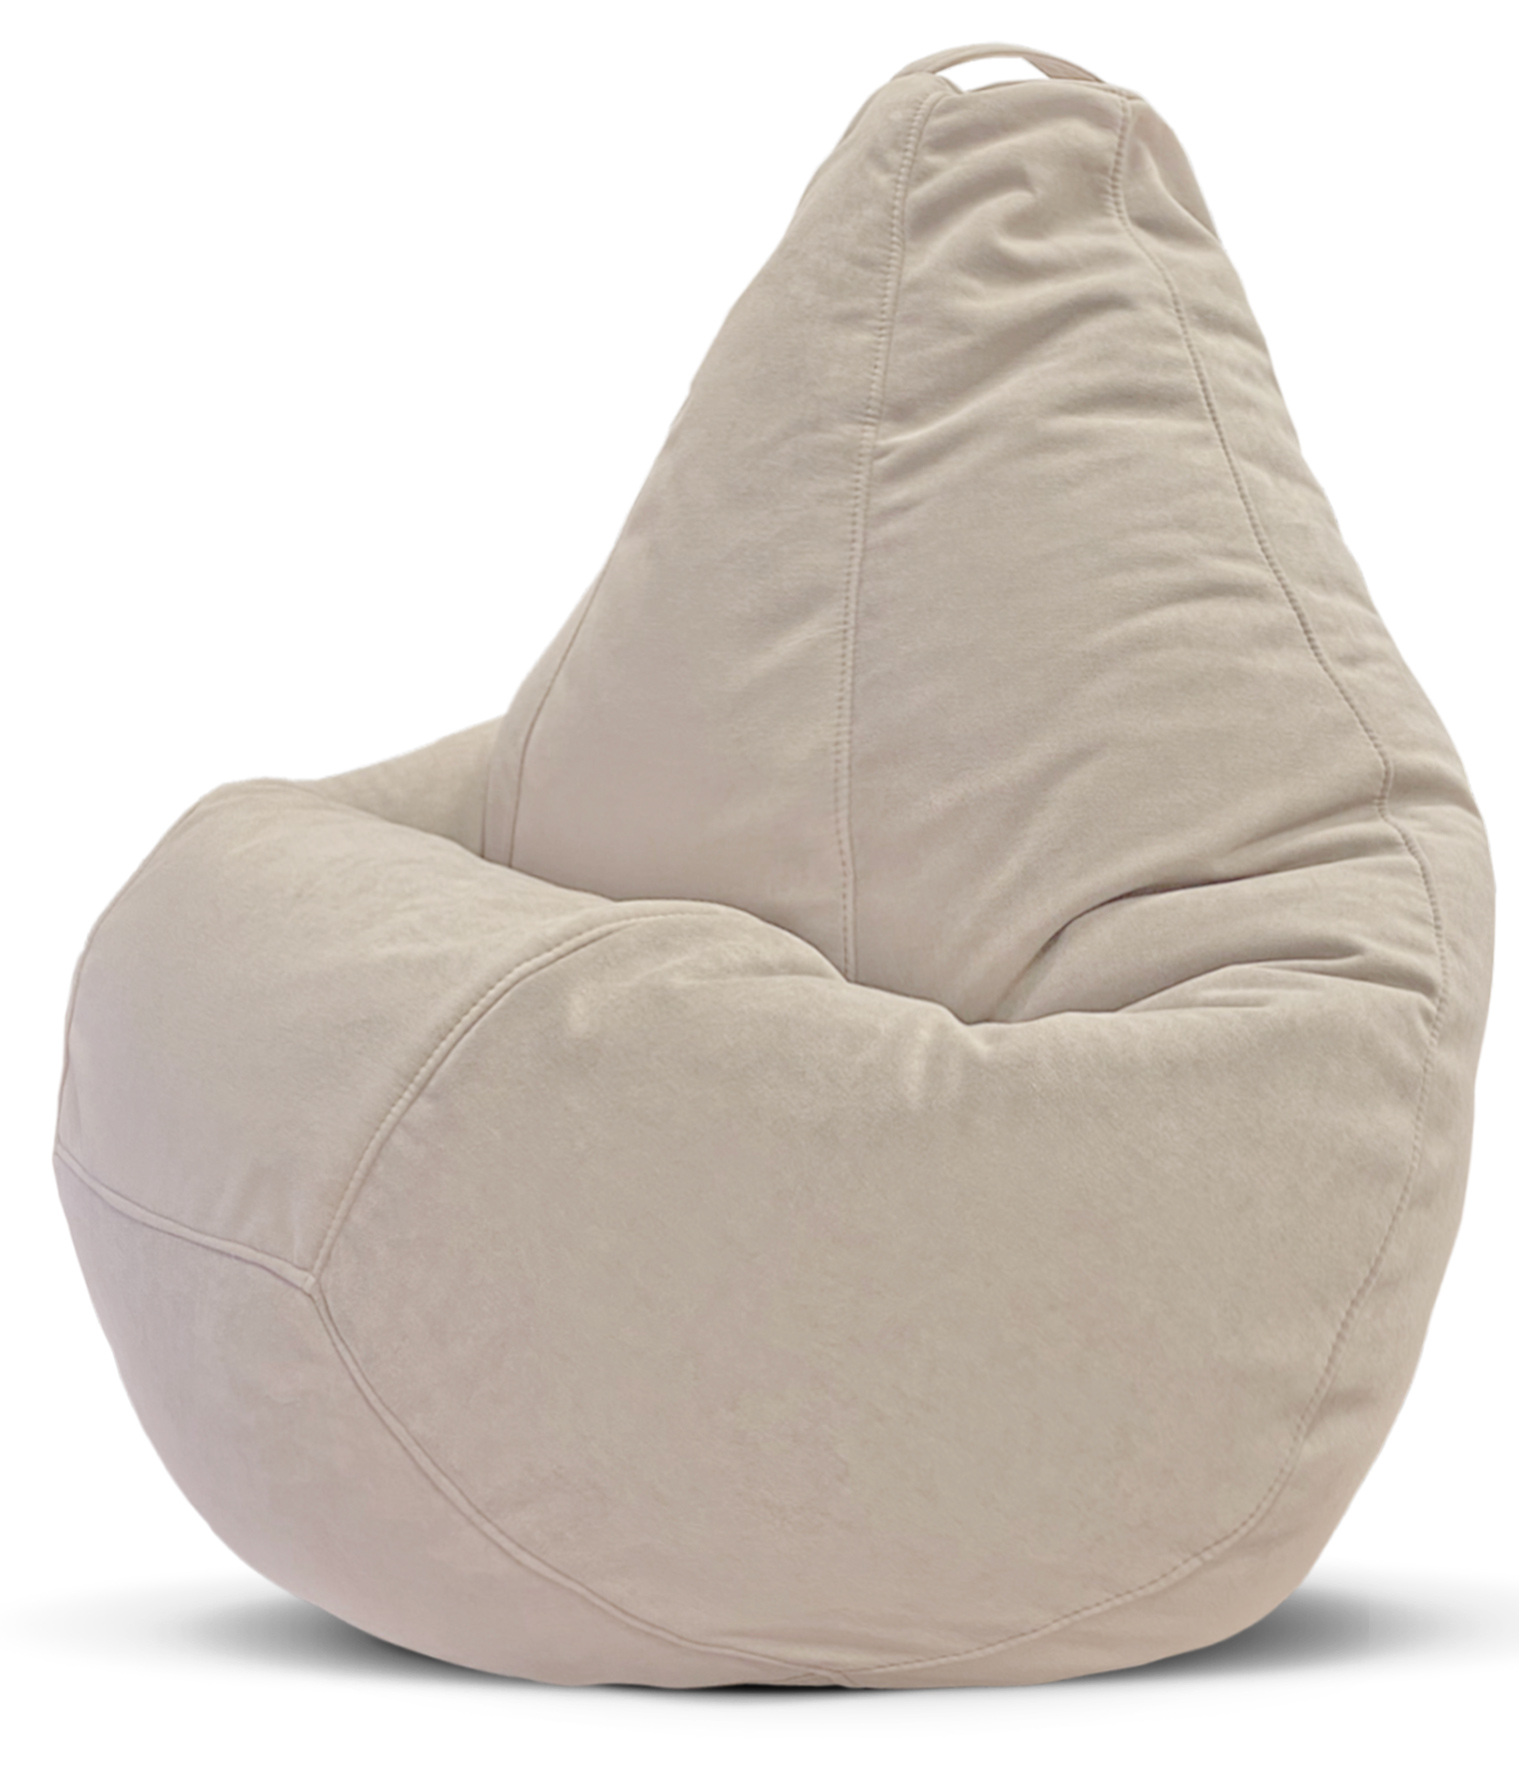 Кресло-мешок PUFLOVE пуфик груша, размер XXXXL, светло-бежевый велюр